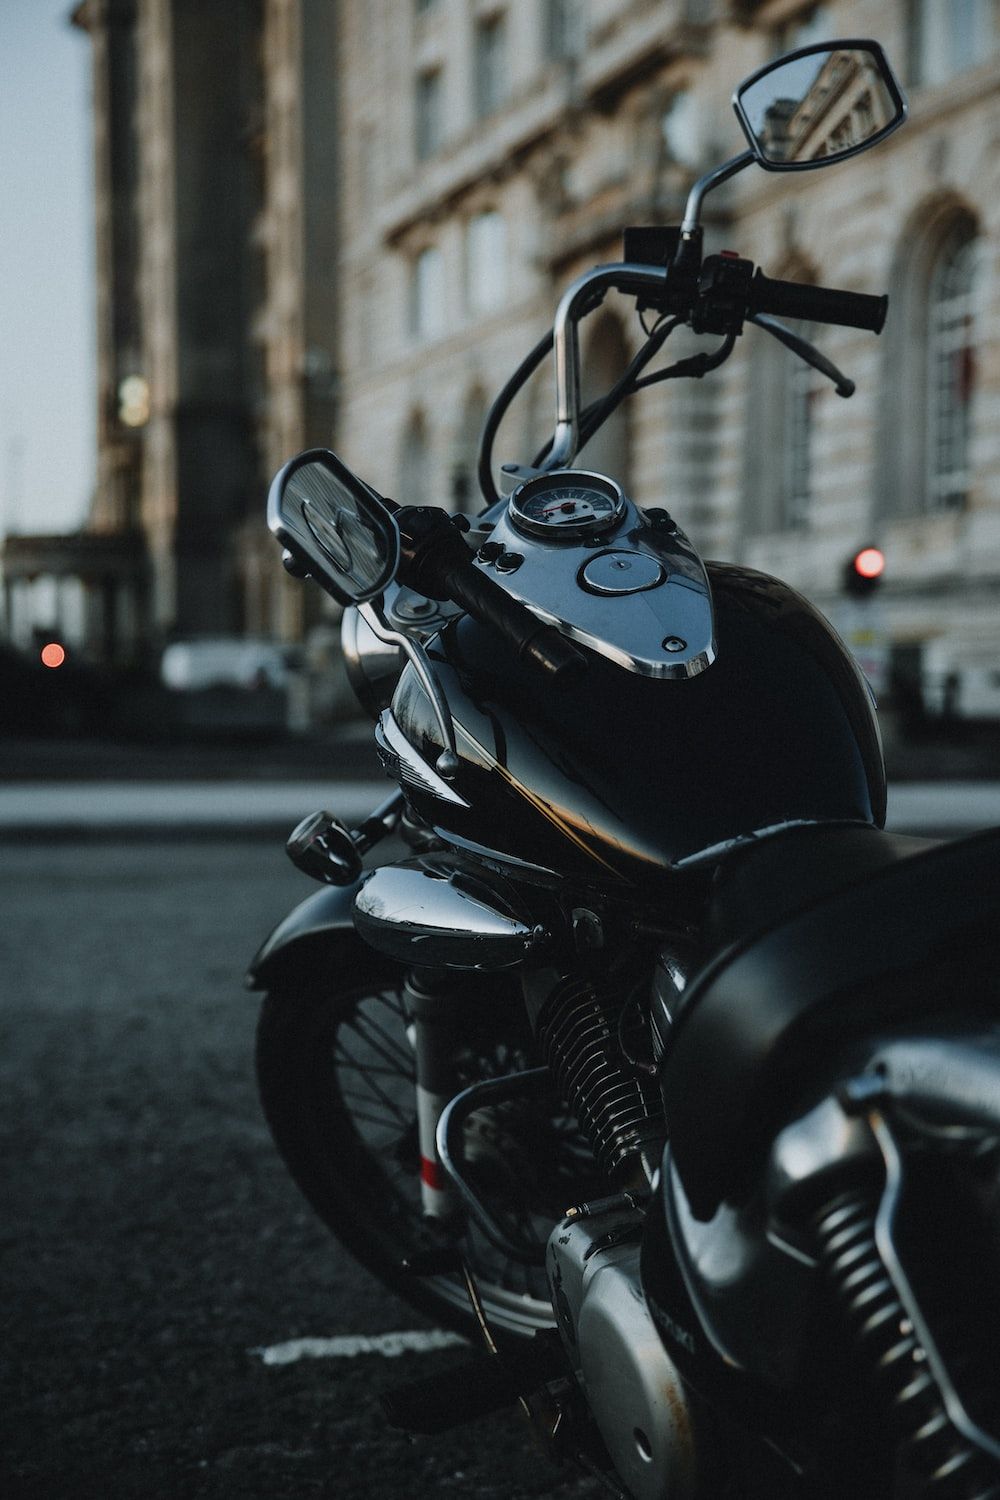  Motorrad Hintergrundbild 1000x1500. Foto zum Thema Schwarzes motorrad tagsüber unterwegs